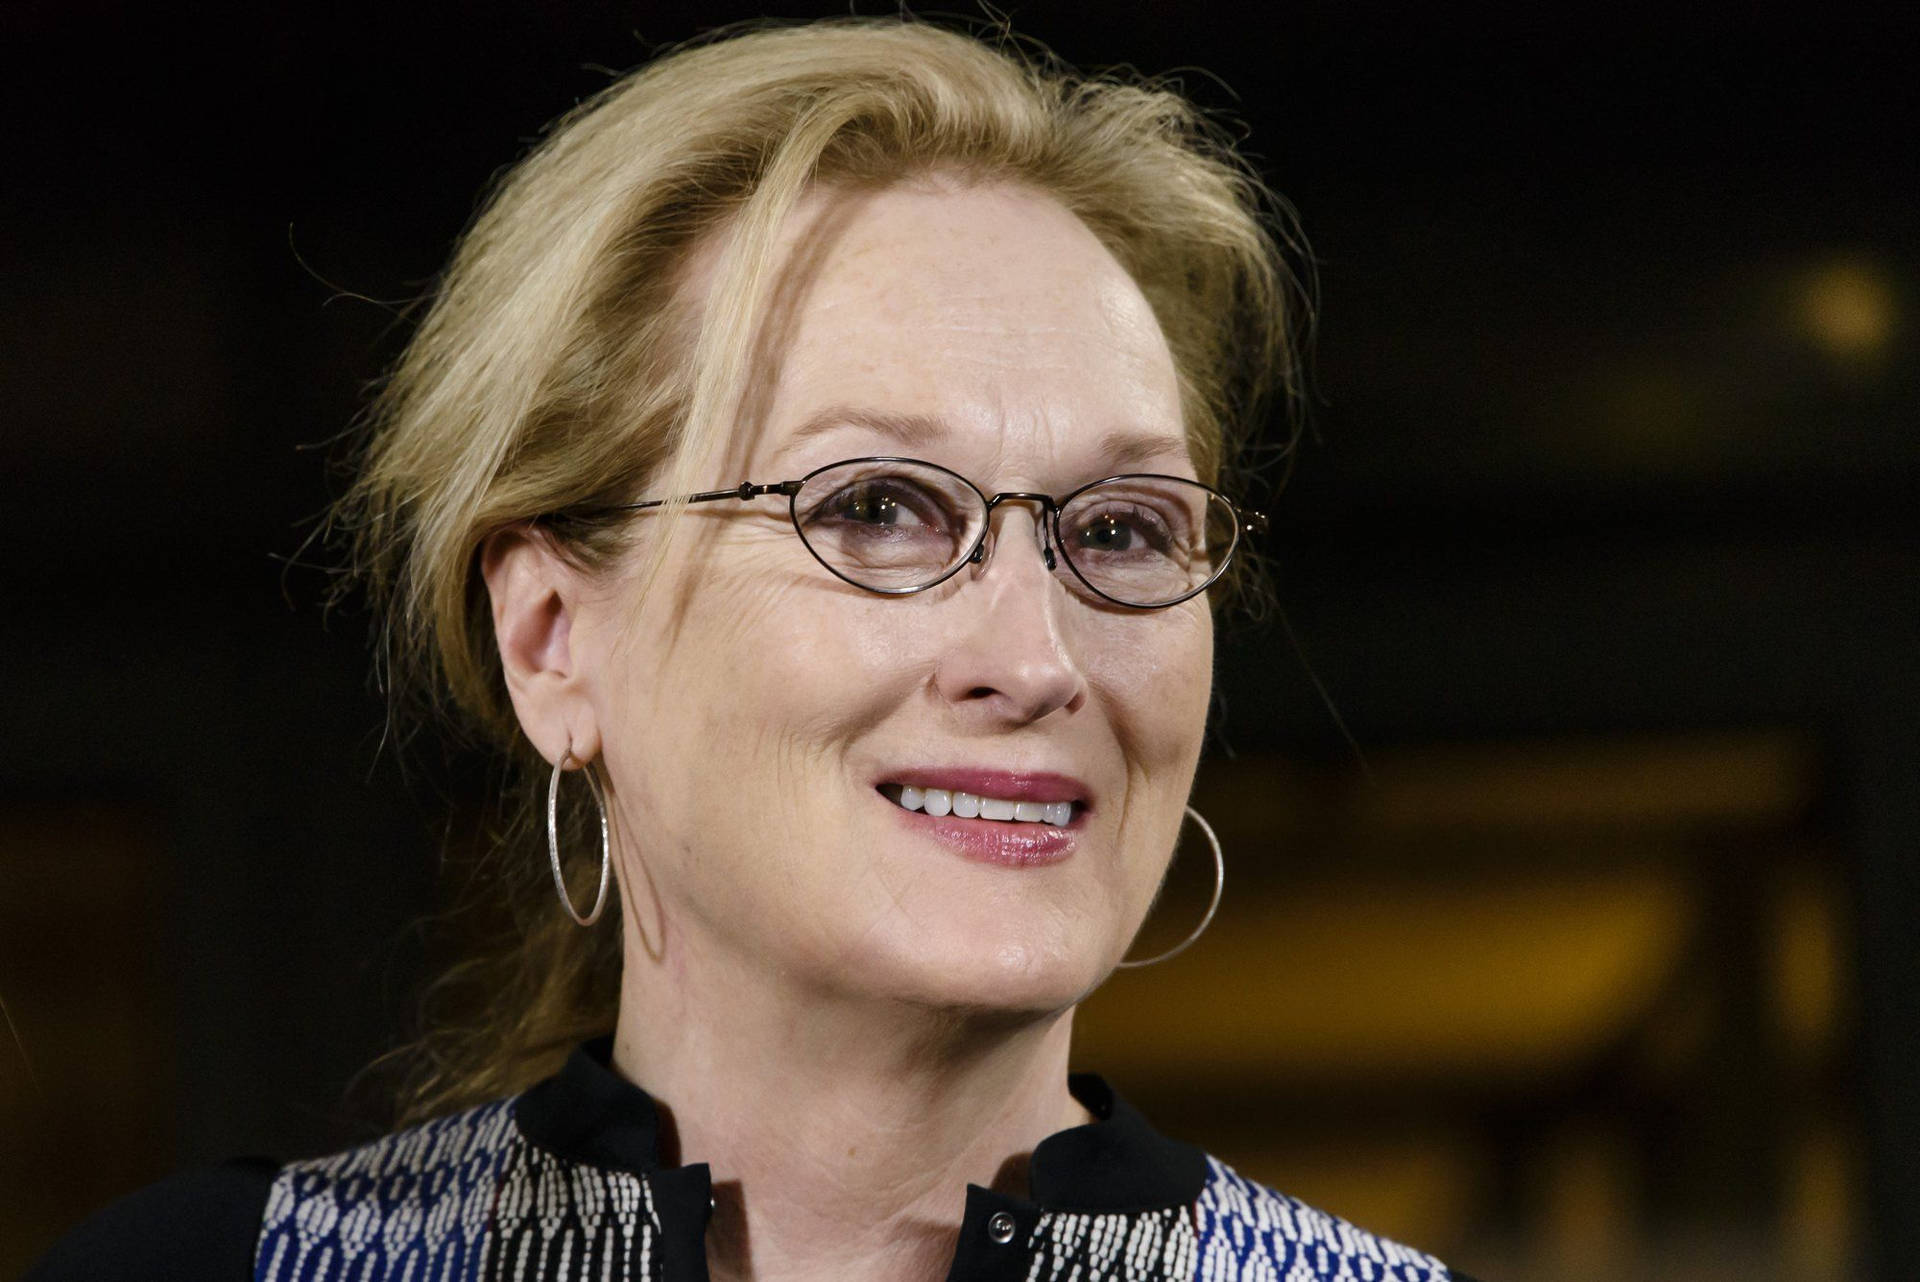 Messy Hair Look Of Meryl Streep Background